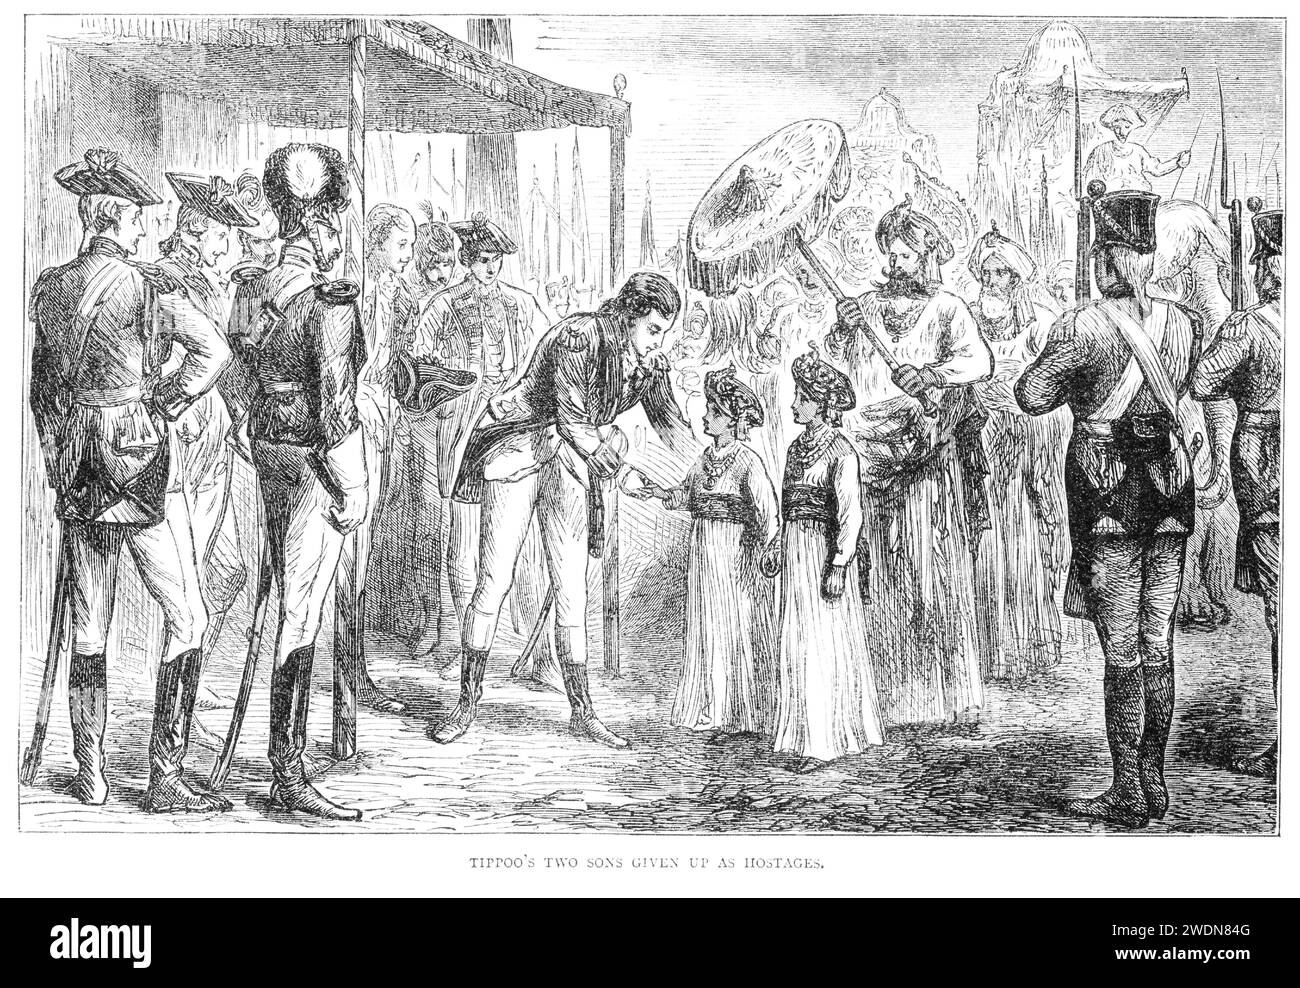 I due figli di Tipu Sahib, sultano di Mysore, furono consegnati come ostaggi al generale Cornwallis. Questo evento pose fine alla terza guerra anglo-Mysore. Lord Cornwallis aveva sconfitto Tipu nel maggio 1791, ma il «trattato definitivo» non fu firmato fino al marzo 1792, quando due dei figli di Tipu furono presi in ostaggio dai britannici per garantire il rispetto del trattato. Immagine pubblicata nel 1904. Foto Stock